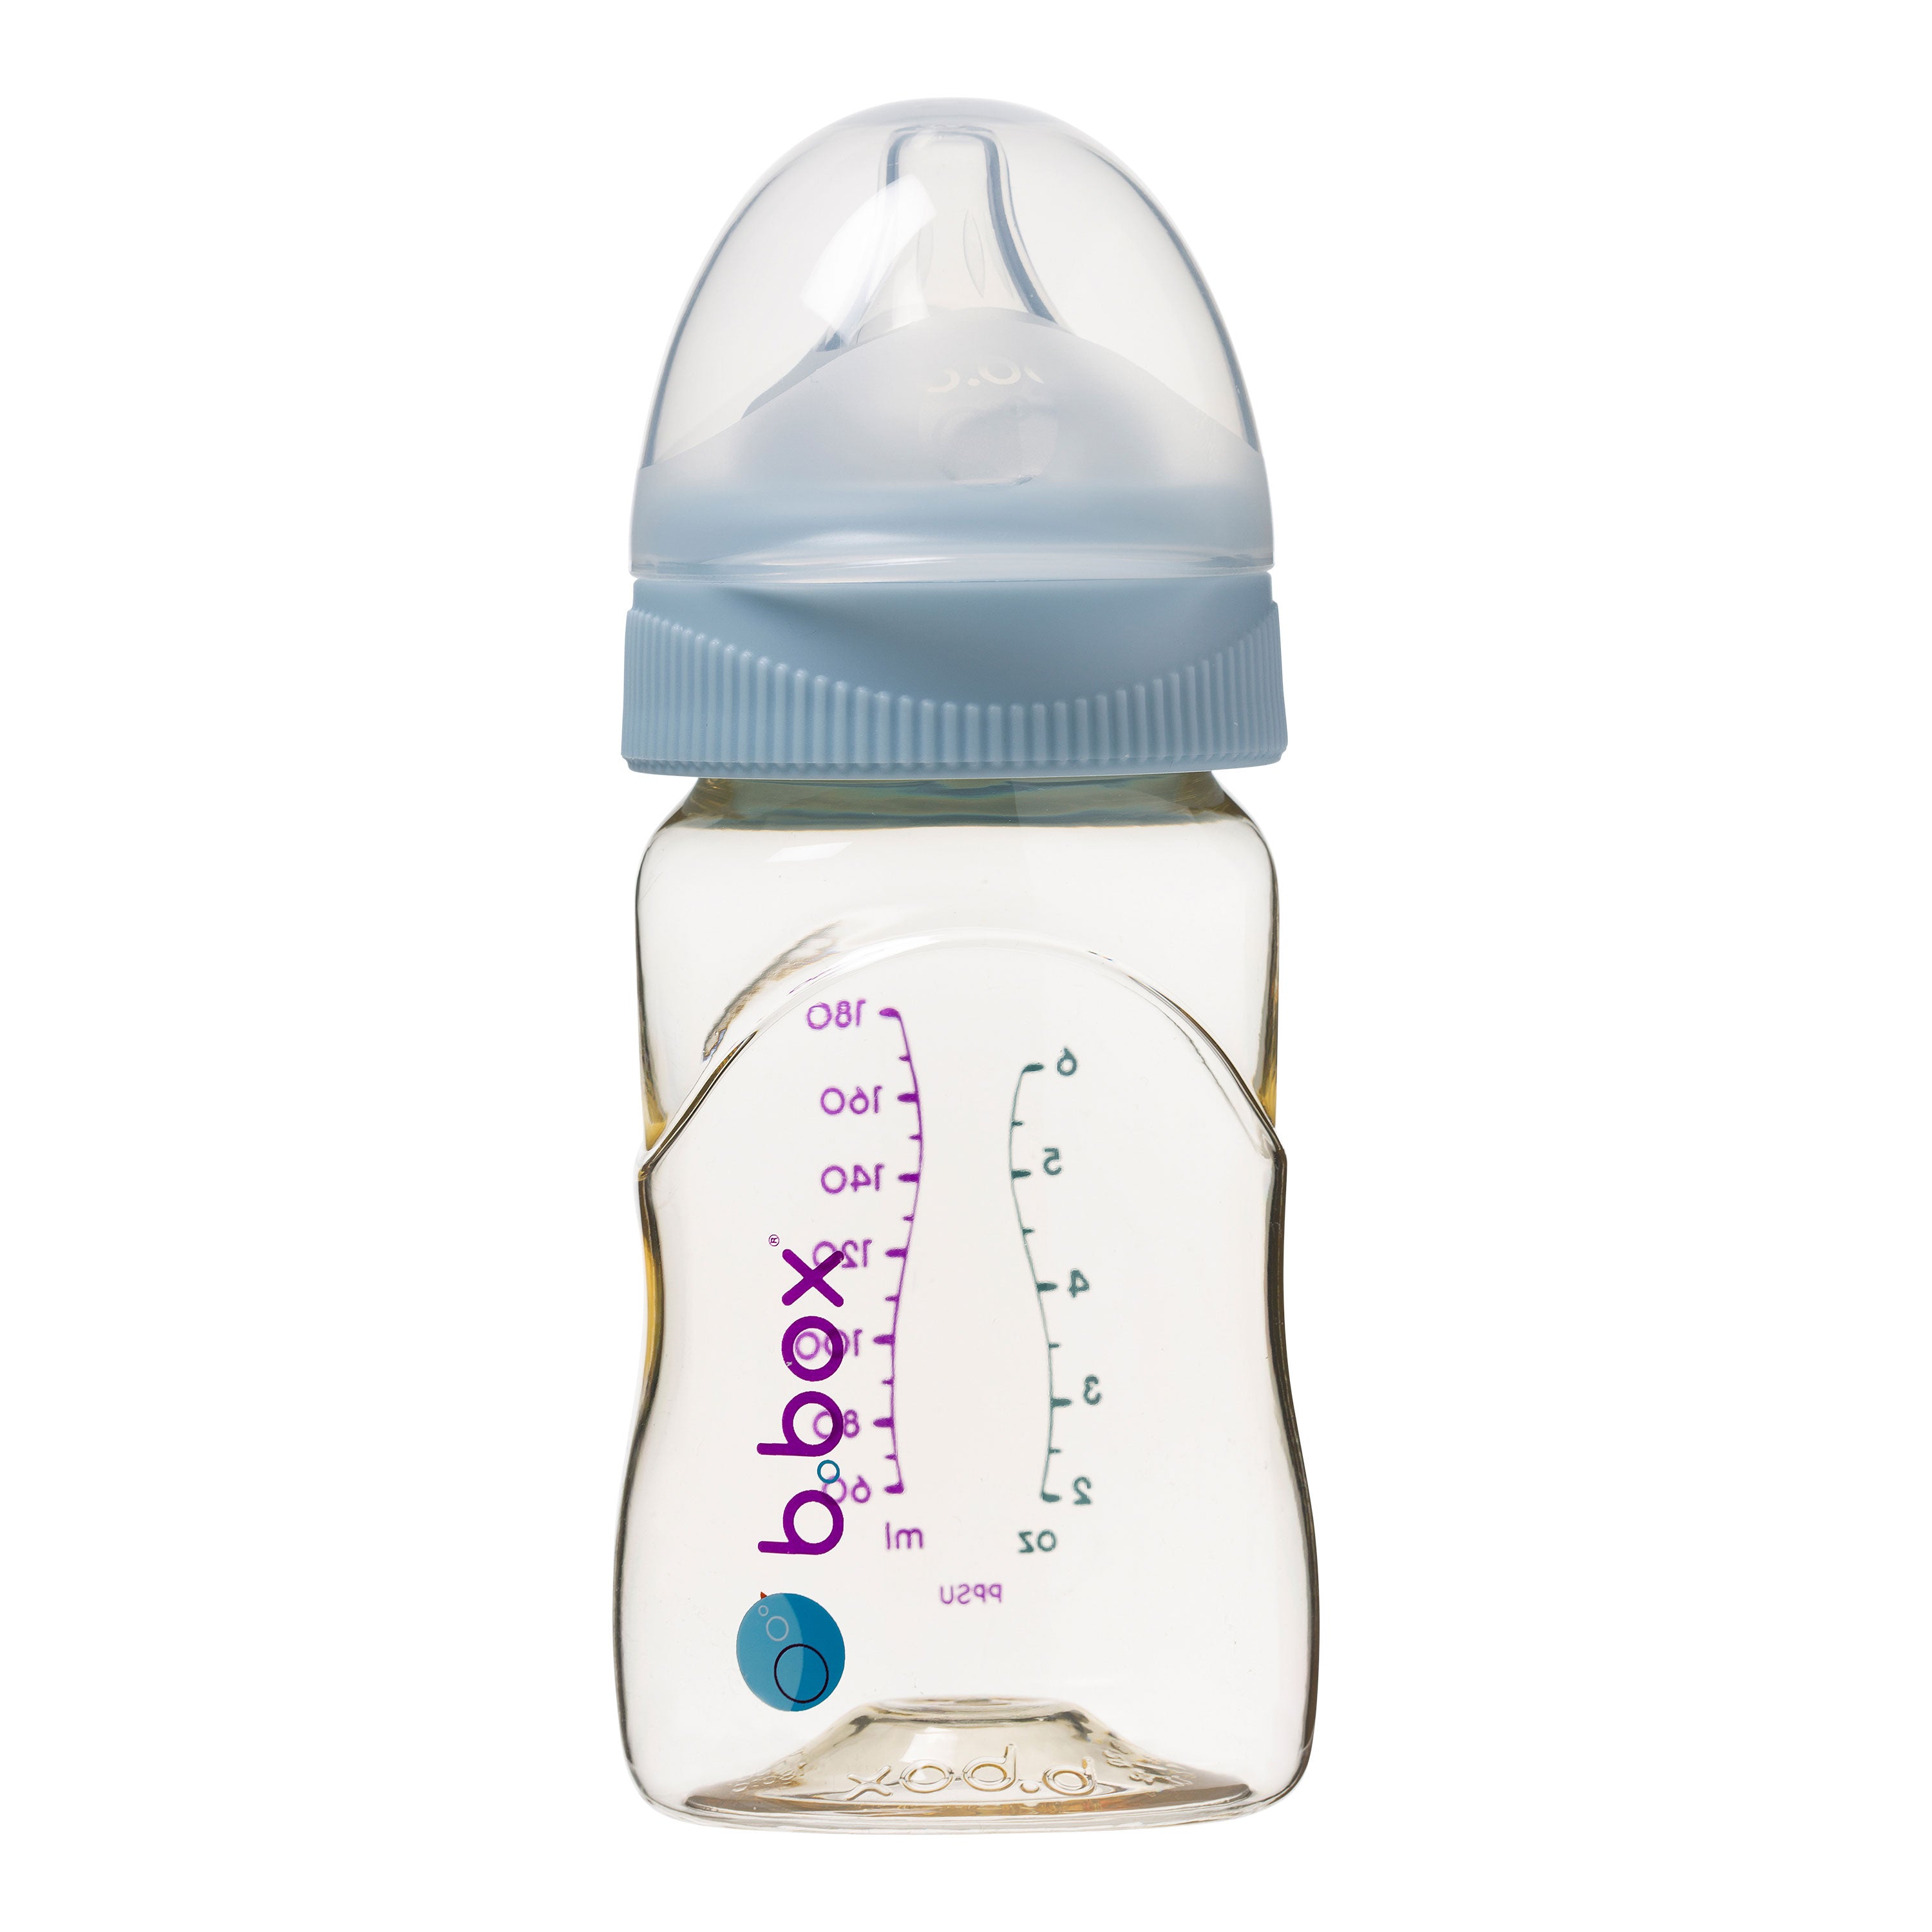 b.box ppsu Baby Bottles & accessories